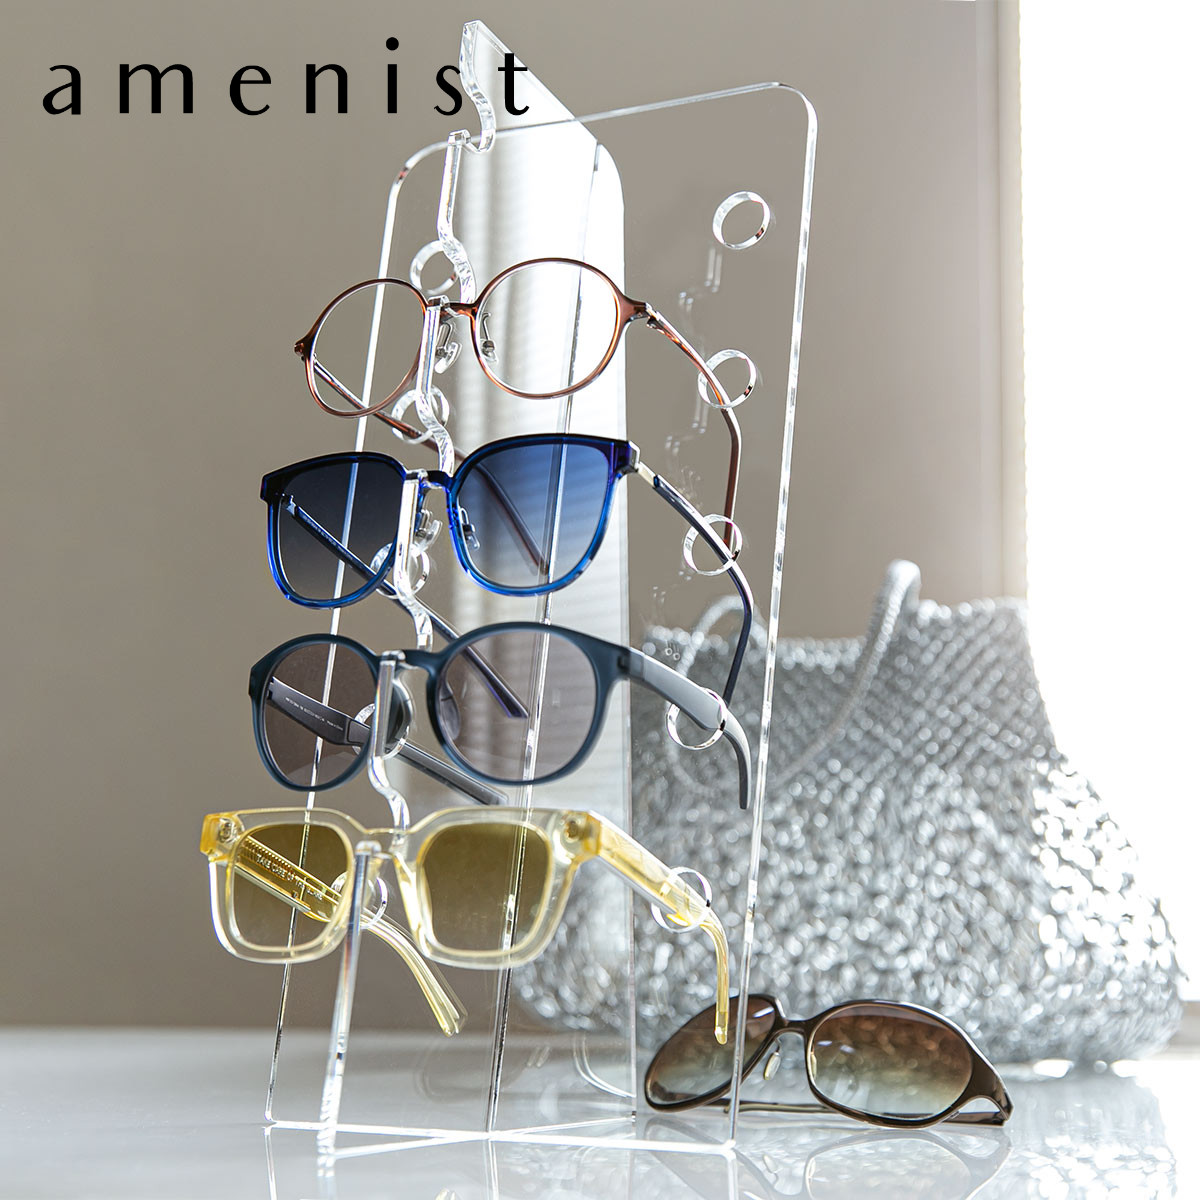 メガネスタンド amenist アクリル製 日本製 （ 眼鏡スタンド 5本 収納 めがね メガネ スタンド ディスプレイ 飾る 複数 アクリル アメニ